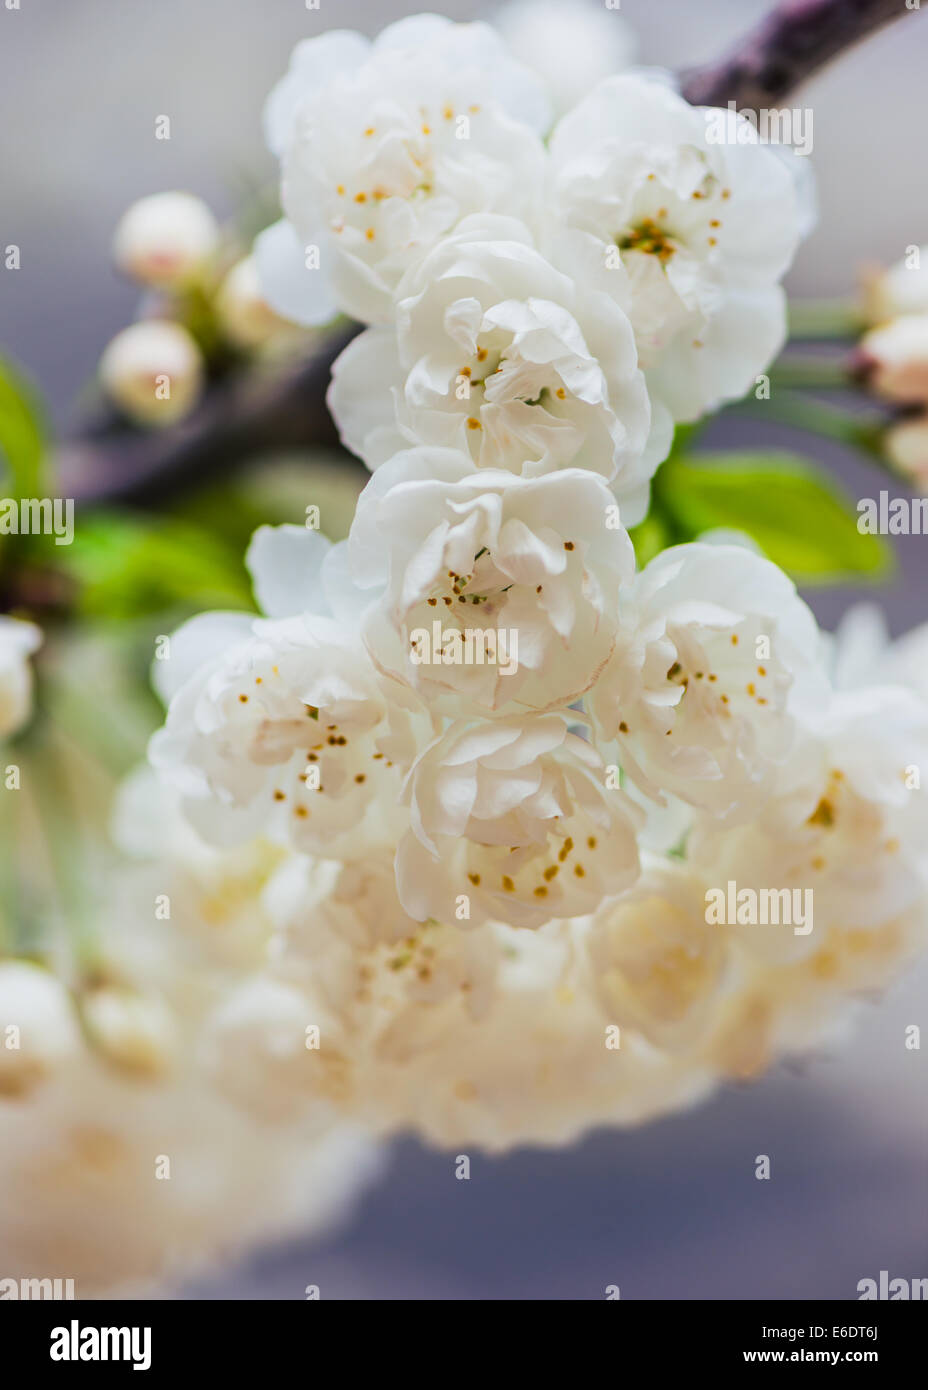 Prunus avium Plena blanc de printemps fleur de cerisier avec natural background Banque D'Images